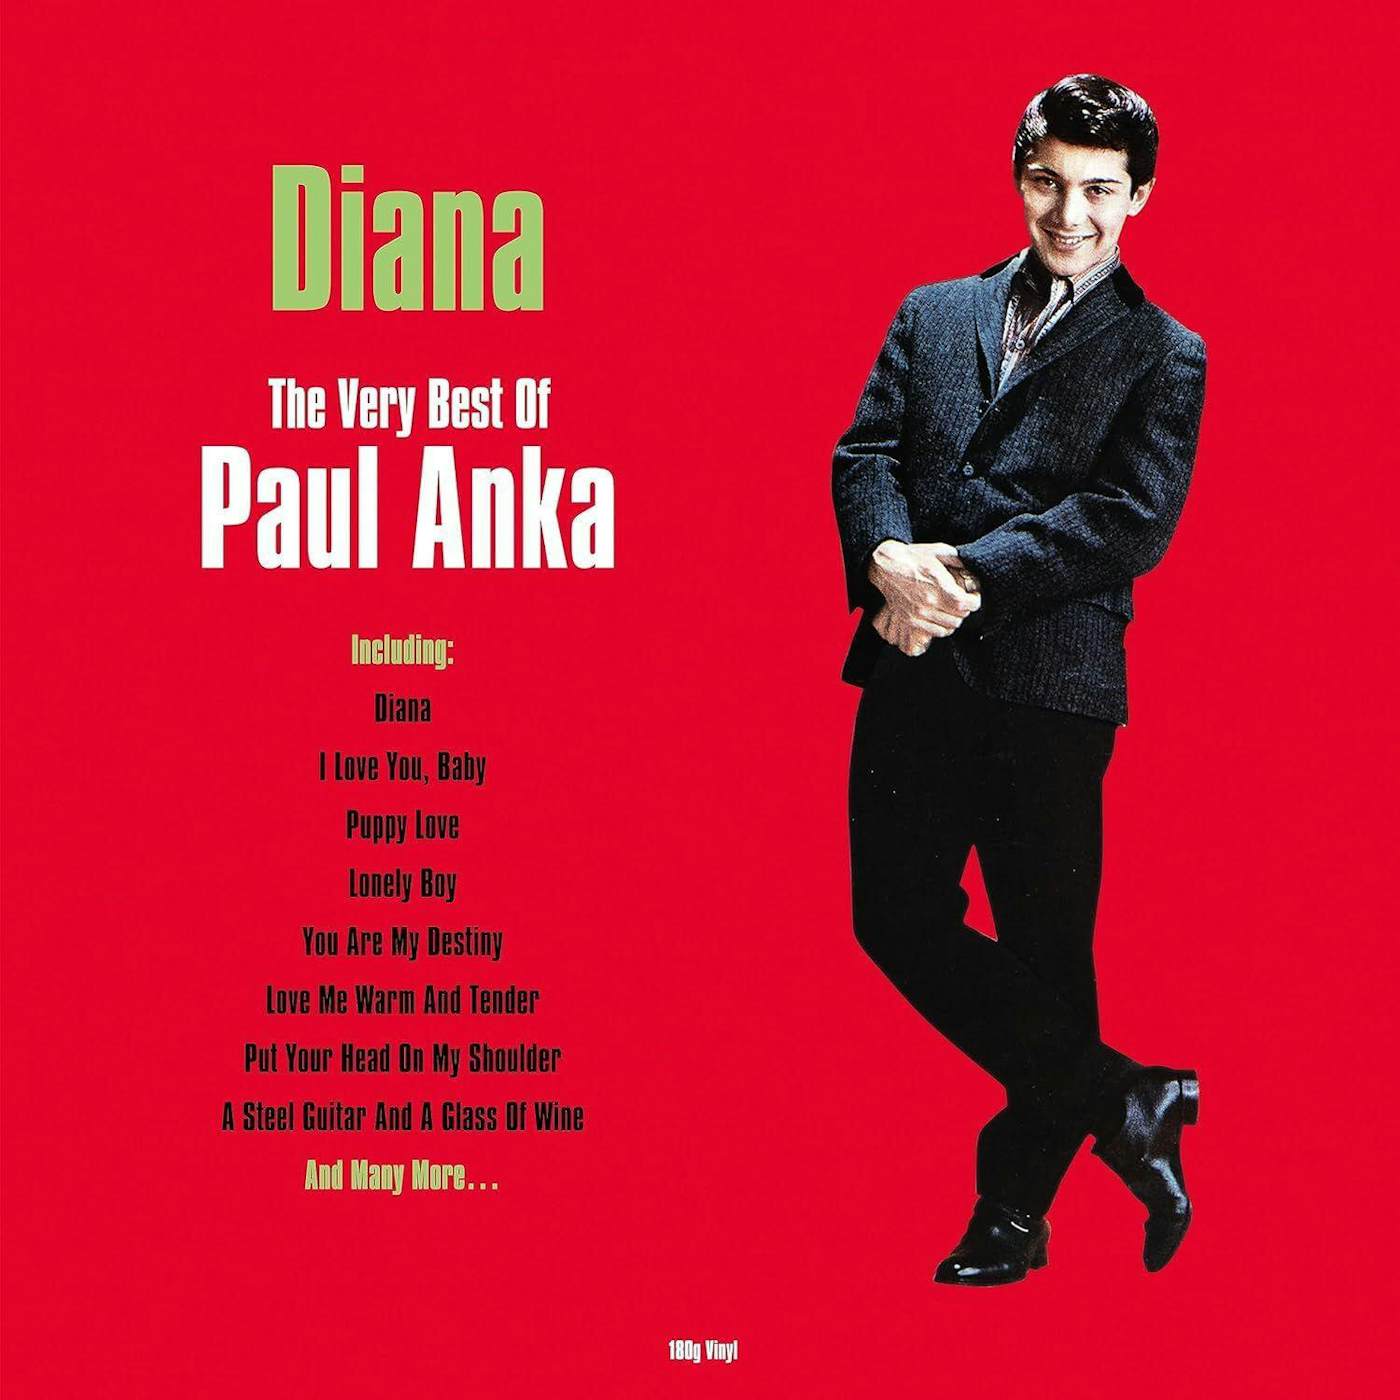 Diana: The Very Best Of Paul Anka Vinyl Record